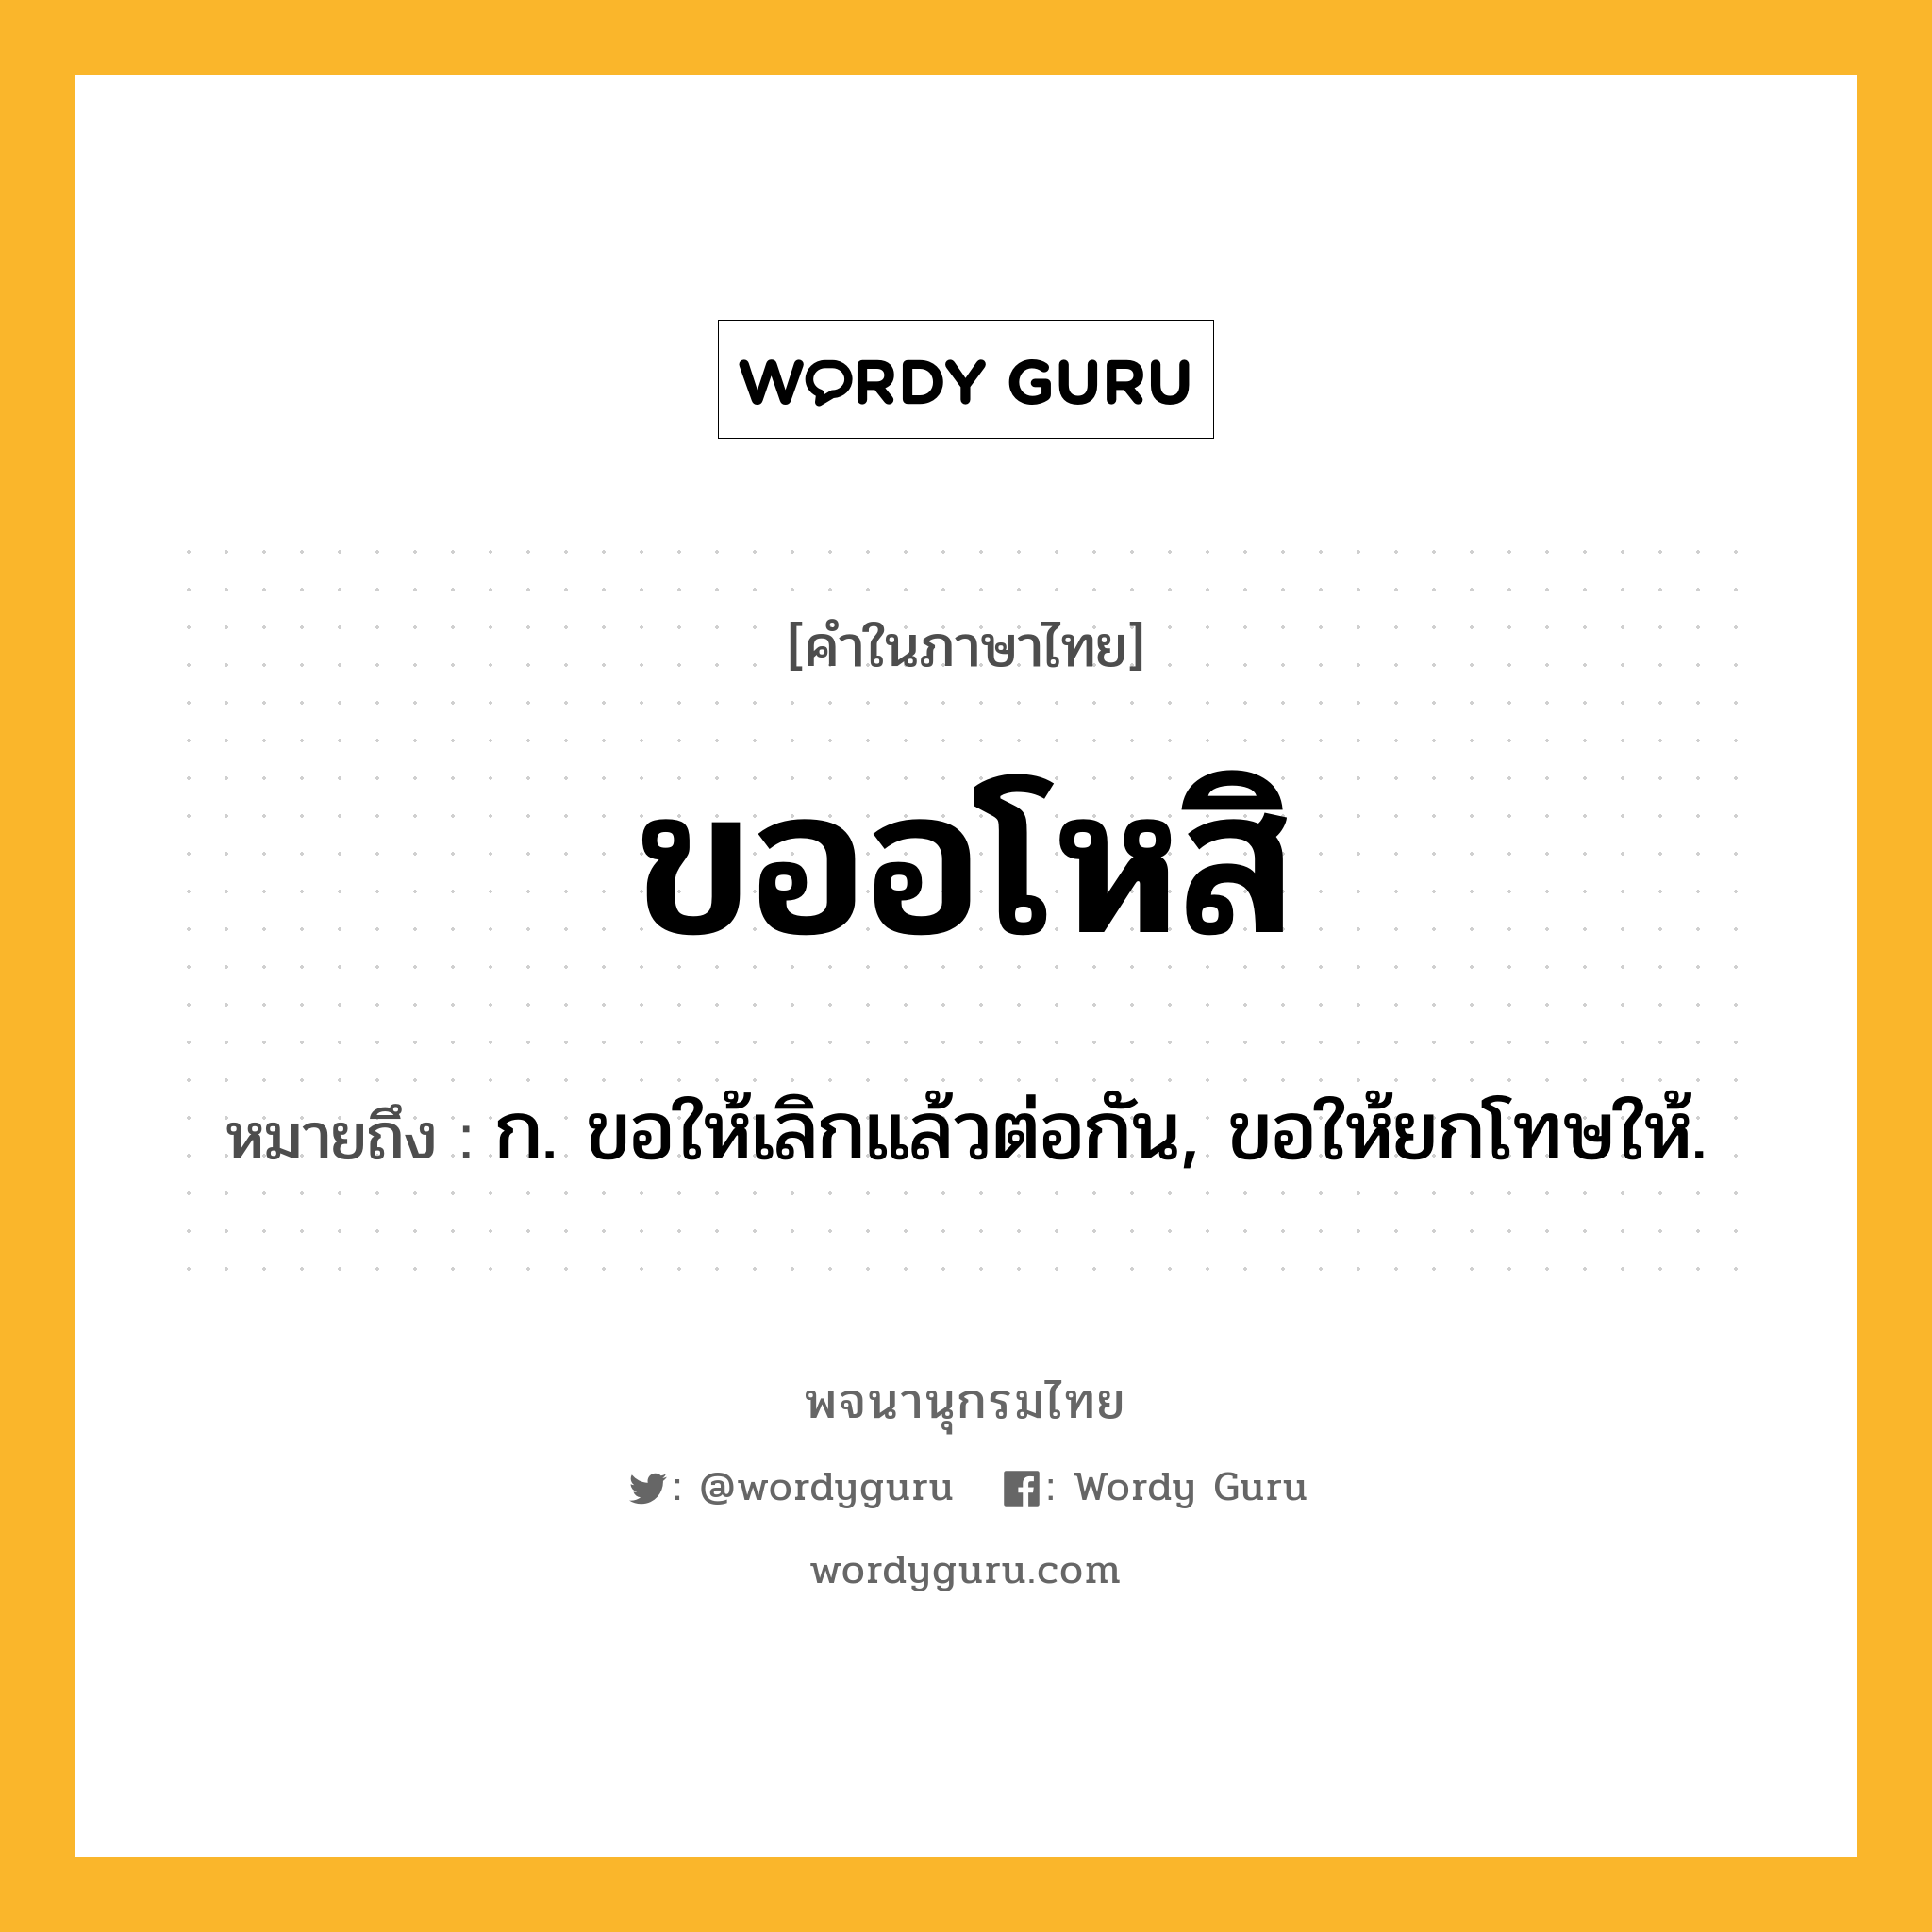 ขออโหสิ ความหมาย หมายถึงอะไร?, คำในภาษาไทย ขออโหสิ หมายถึง ก. ขอให้เลิกแล้วต่อกัน, ขอให้ยกโทษให้.